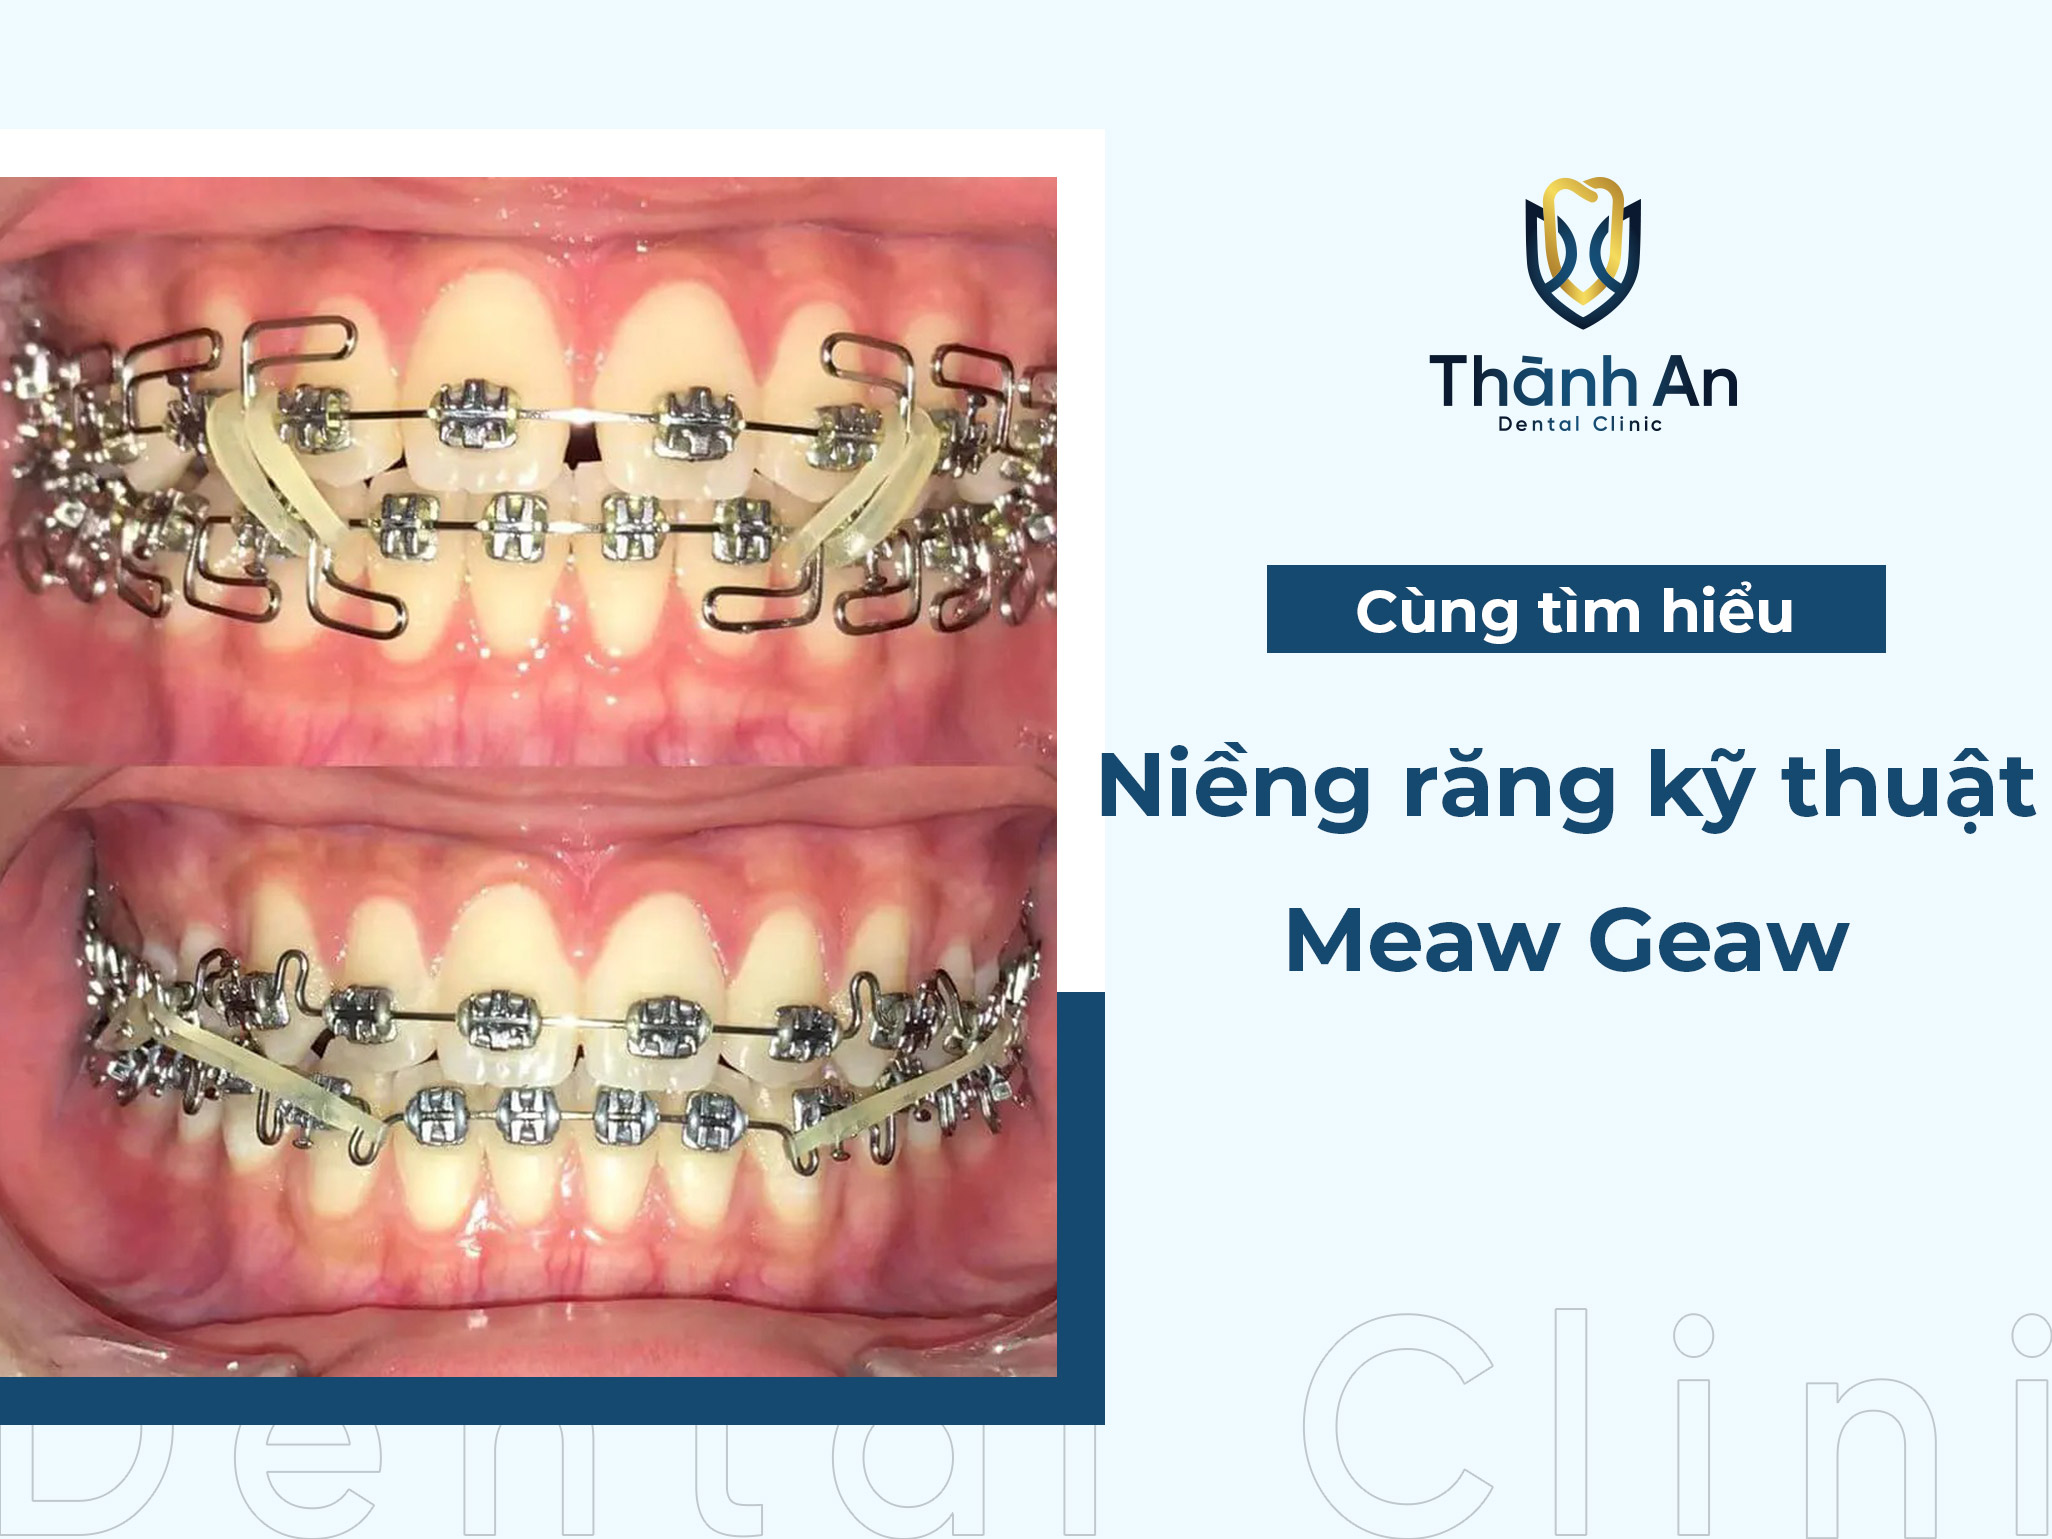 Niềng răng kỹ thuật Meaw - Geaw là gì? 